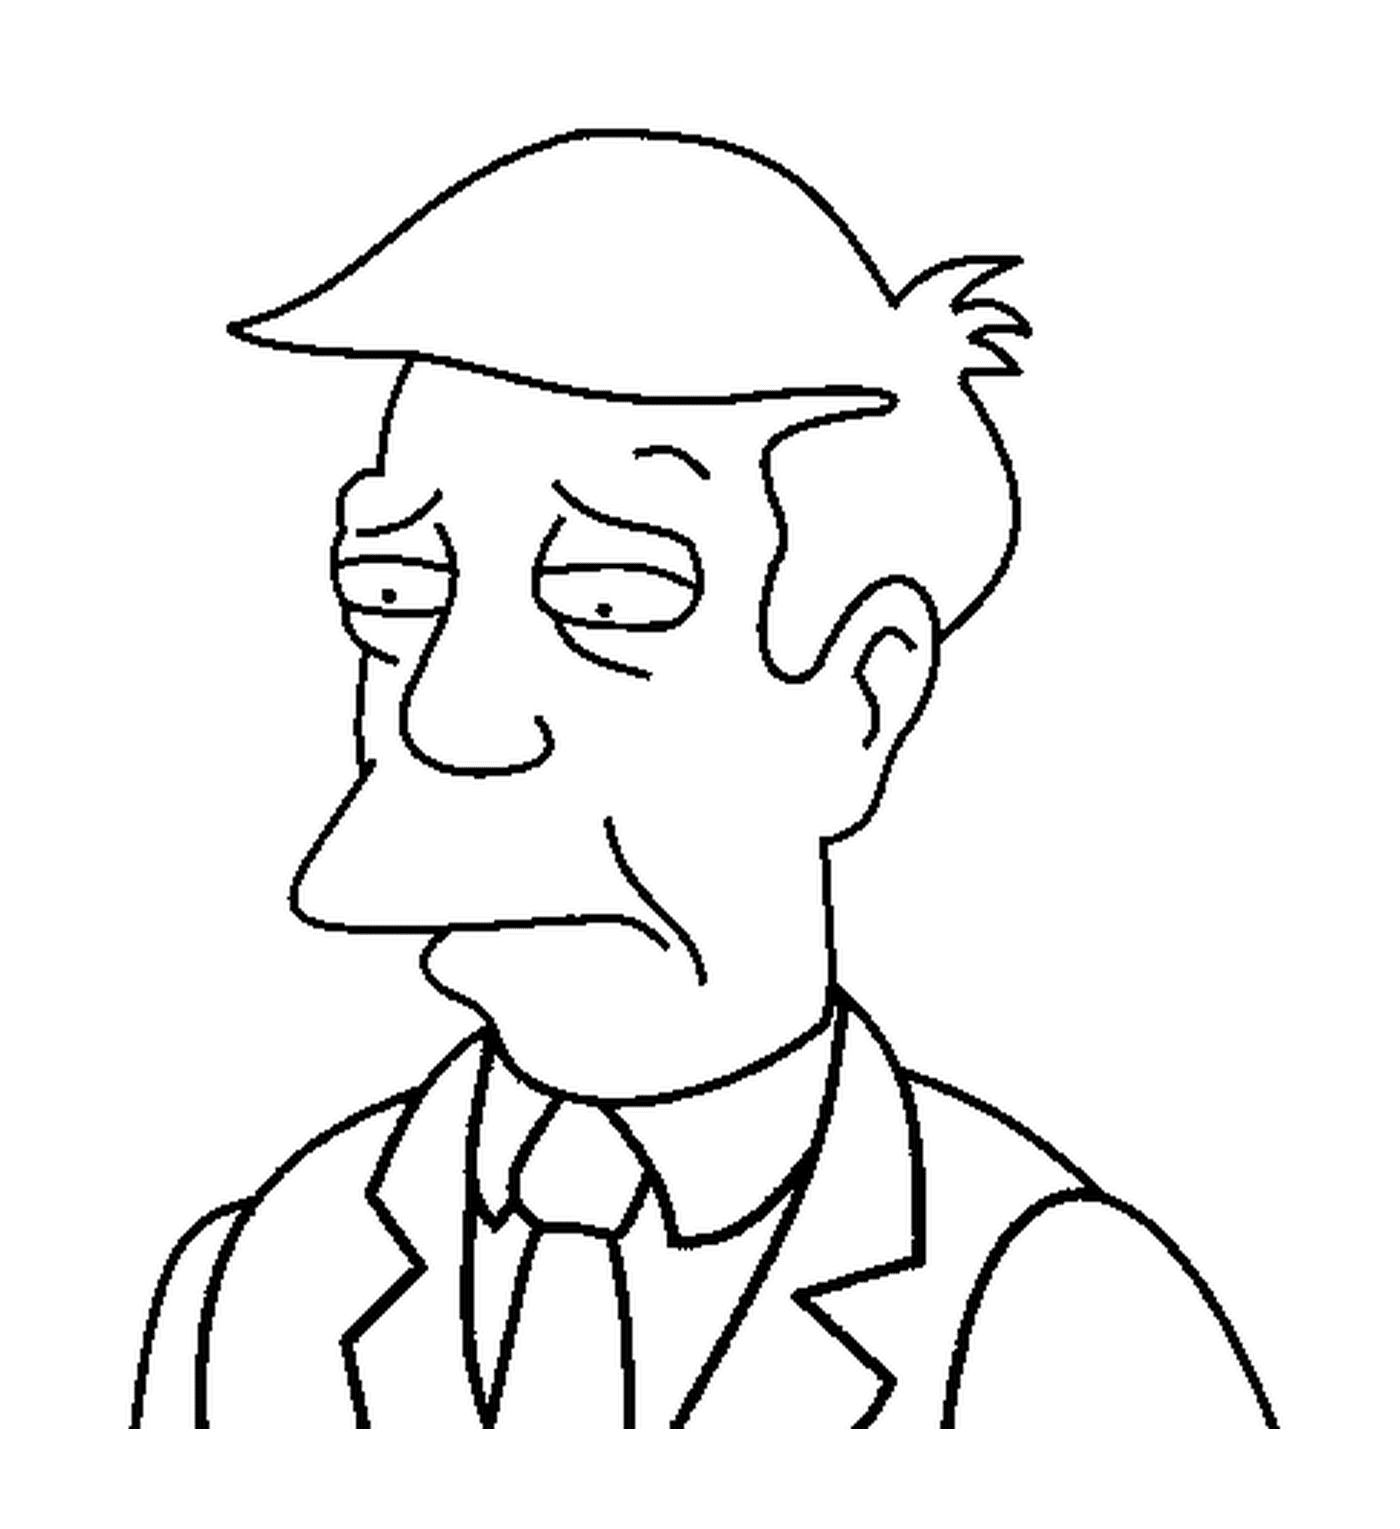  Principal Skinner Simpson 